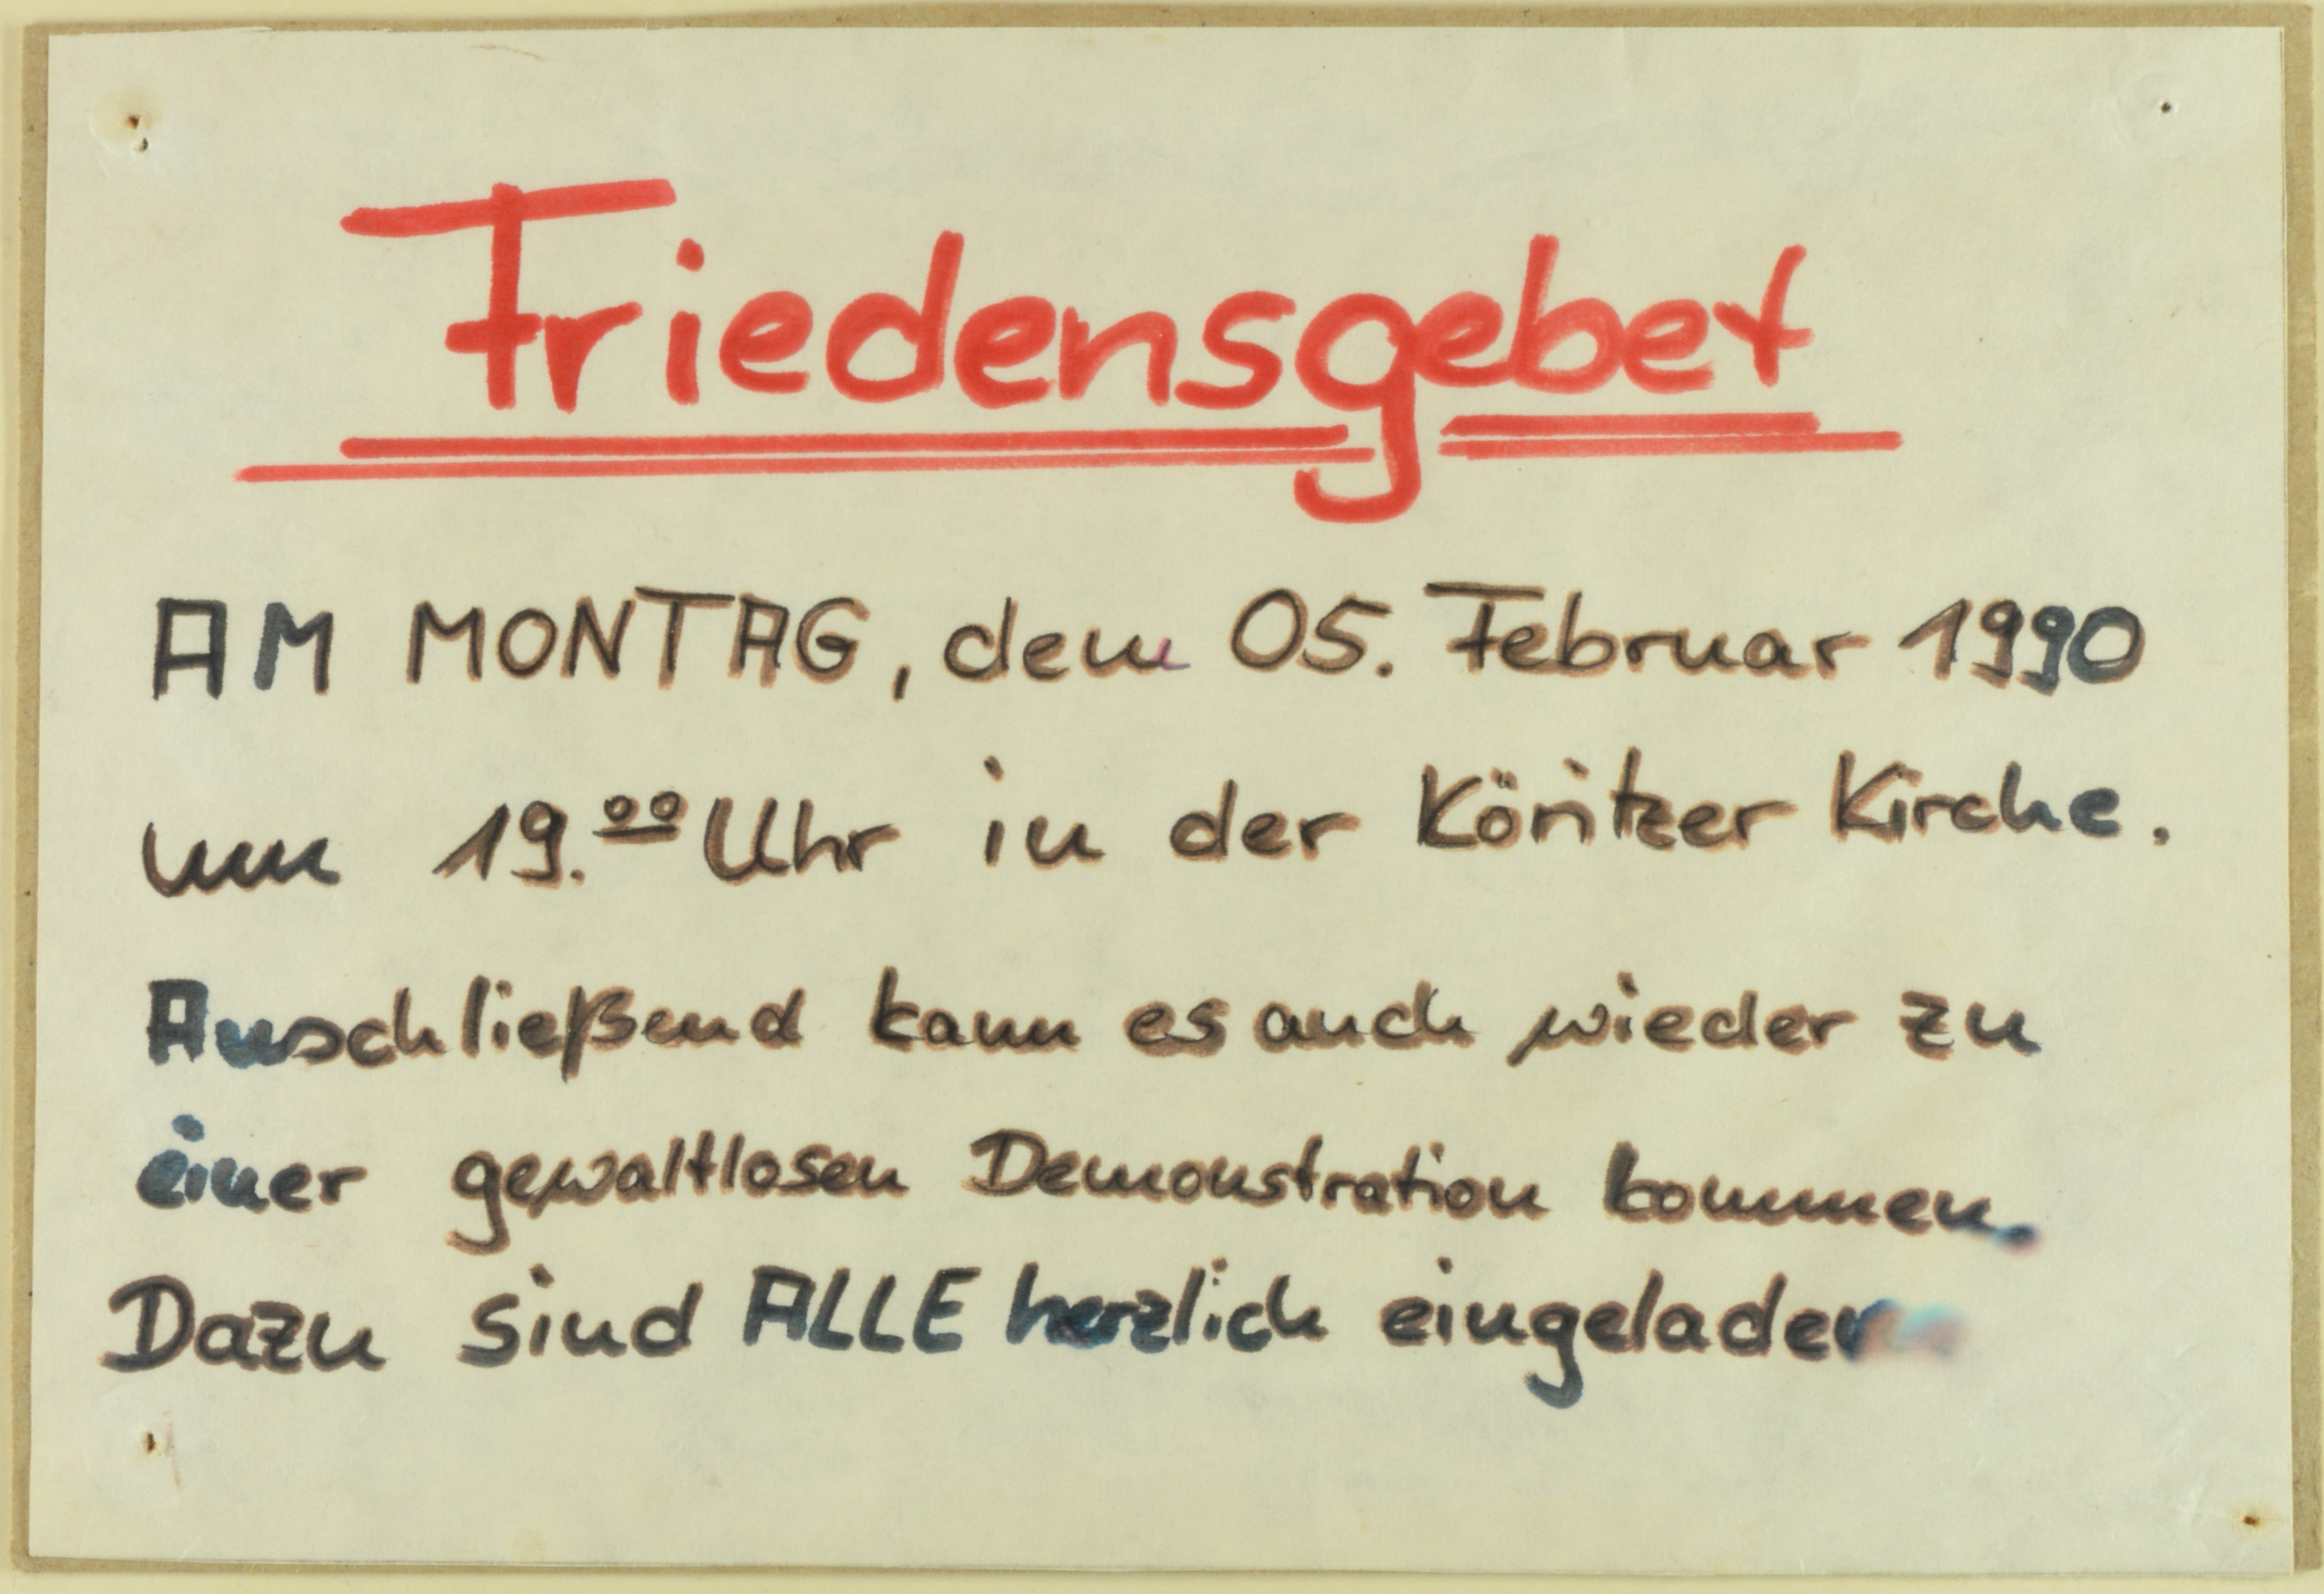 Einladung zum Friedensgebet in der Köritzer Kirche am 5. Februar 1990 (DDR Geschichtsmuseum im Dokumentationszentrum Perleberg CC BY-SA)